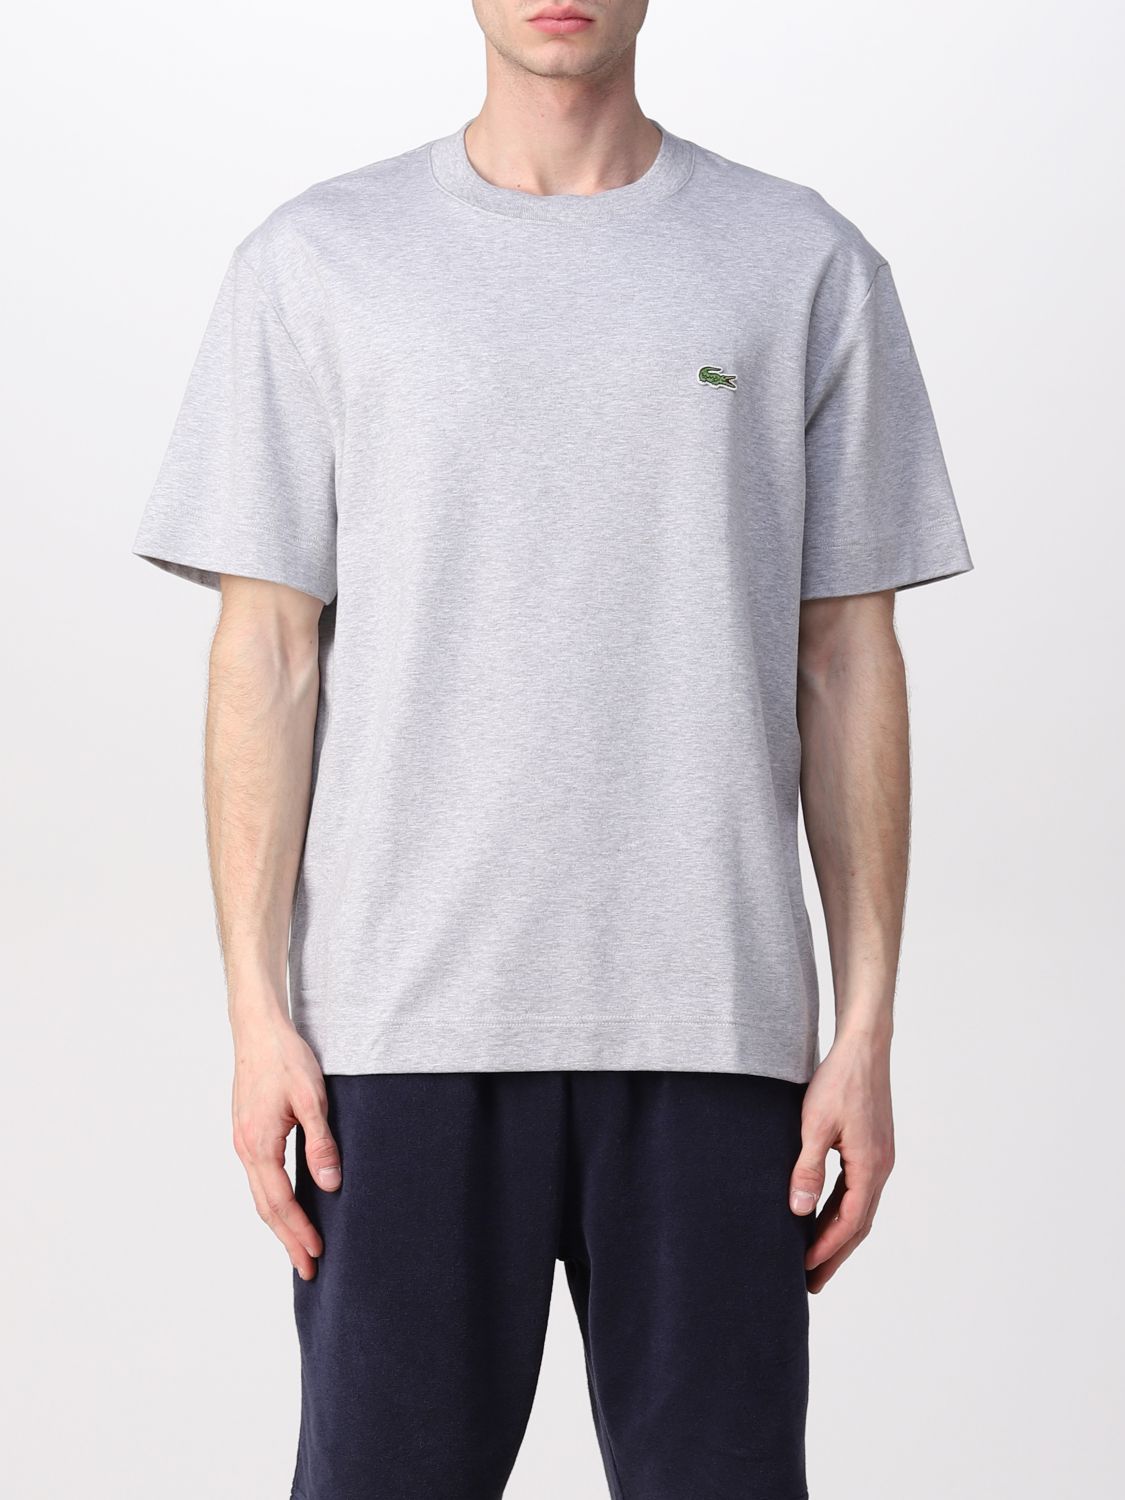 T-shirt Lacoste L!Ve: Lacoste L! Ve T-shirt with logo grey 1